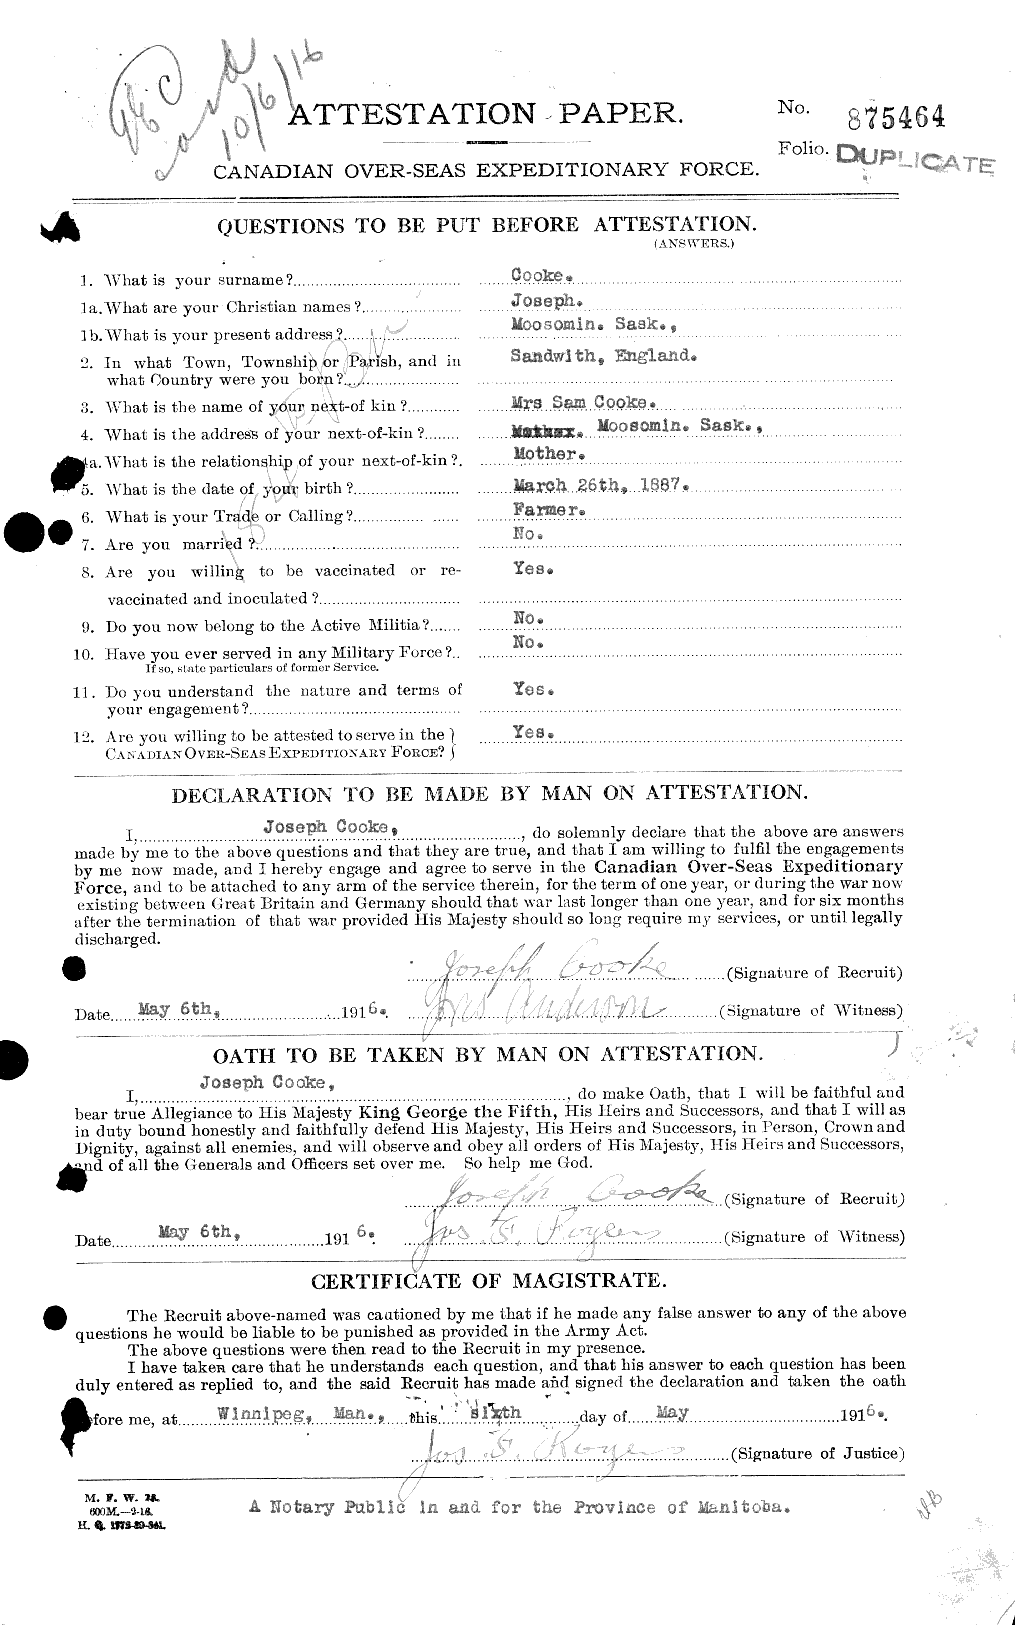 Dossiers du Personnel de la Première Guerre mondiale - CEC 048928a